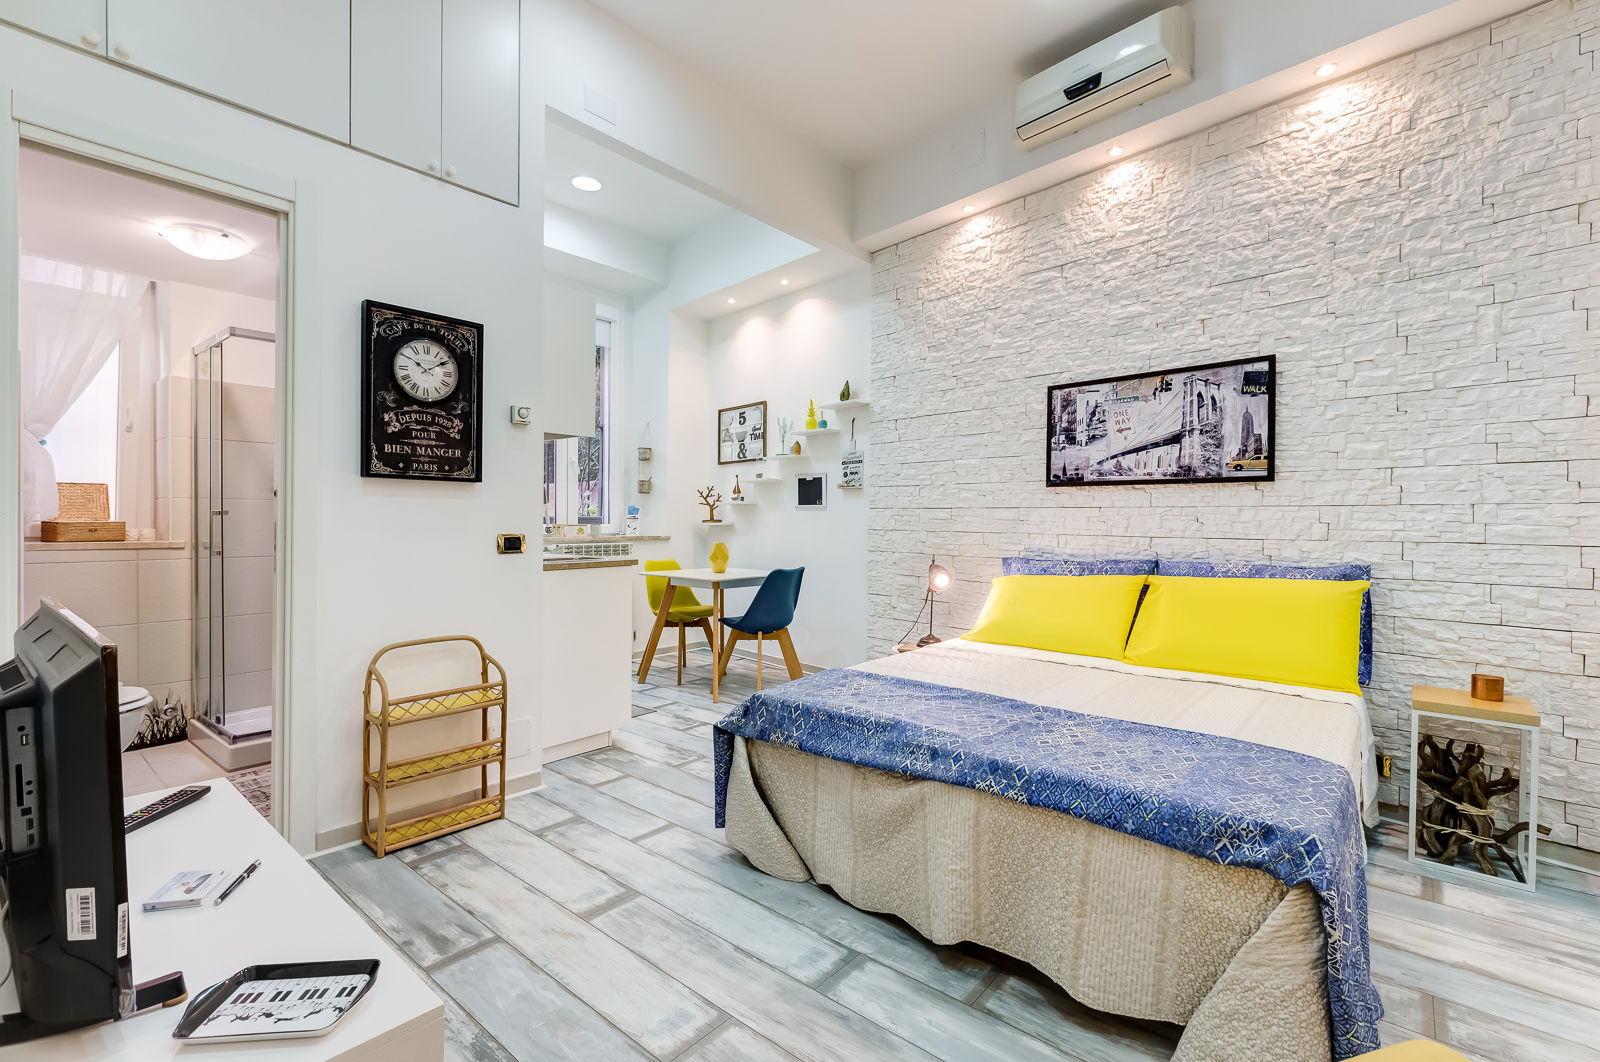 Mini Appartamento Turistico - Roma, Luca Tranquilli - Fotografo Luca Tranquilli - Fotografo Modern style bedroom